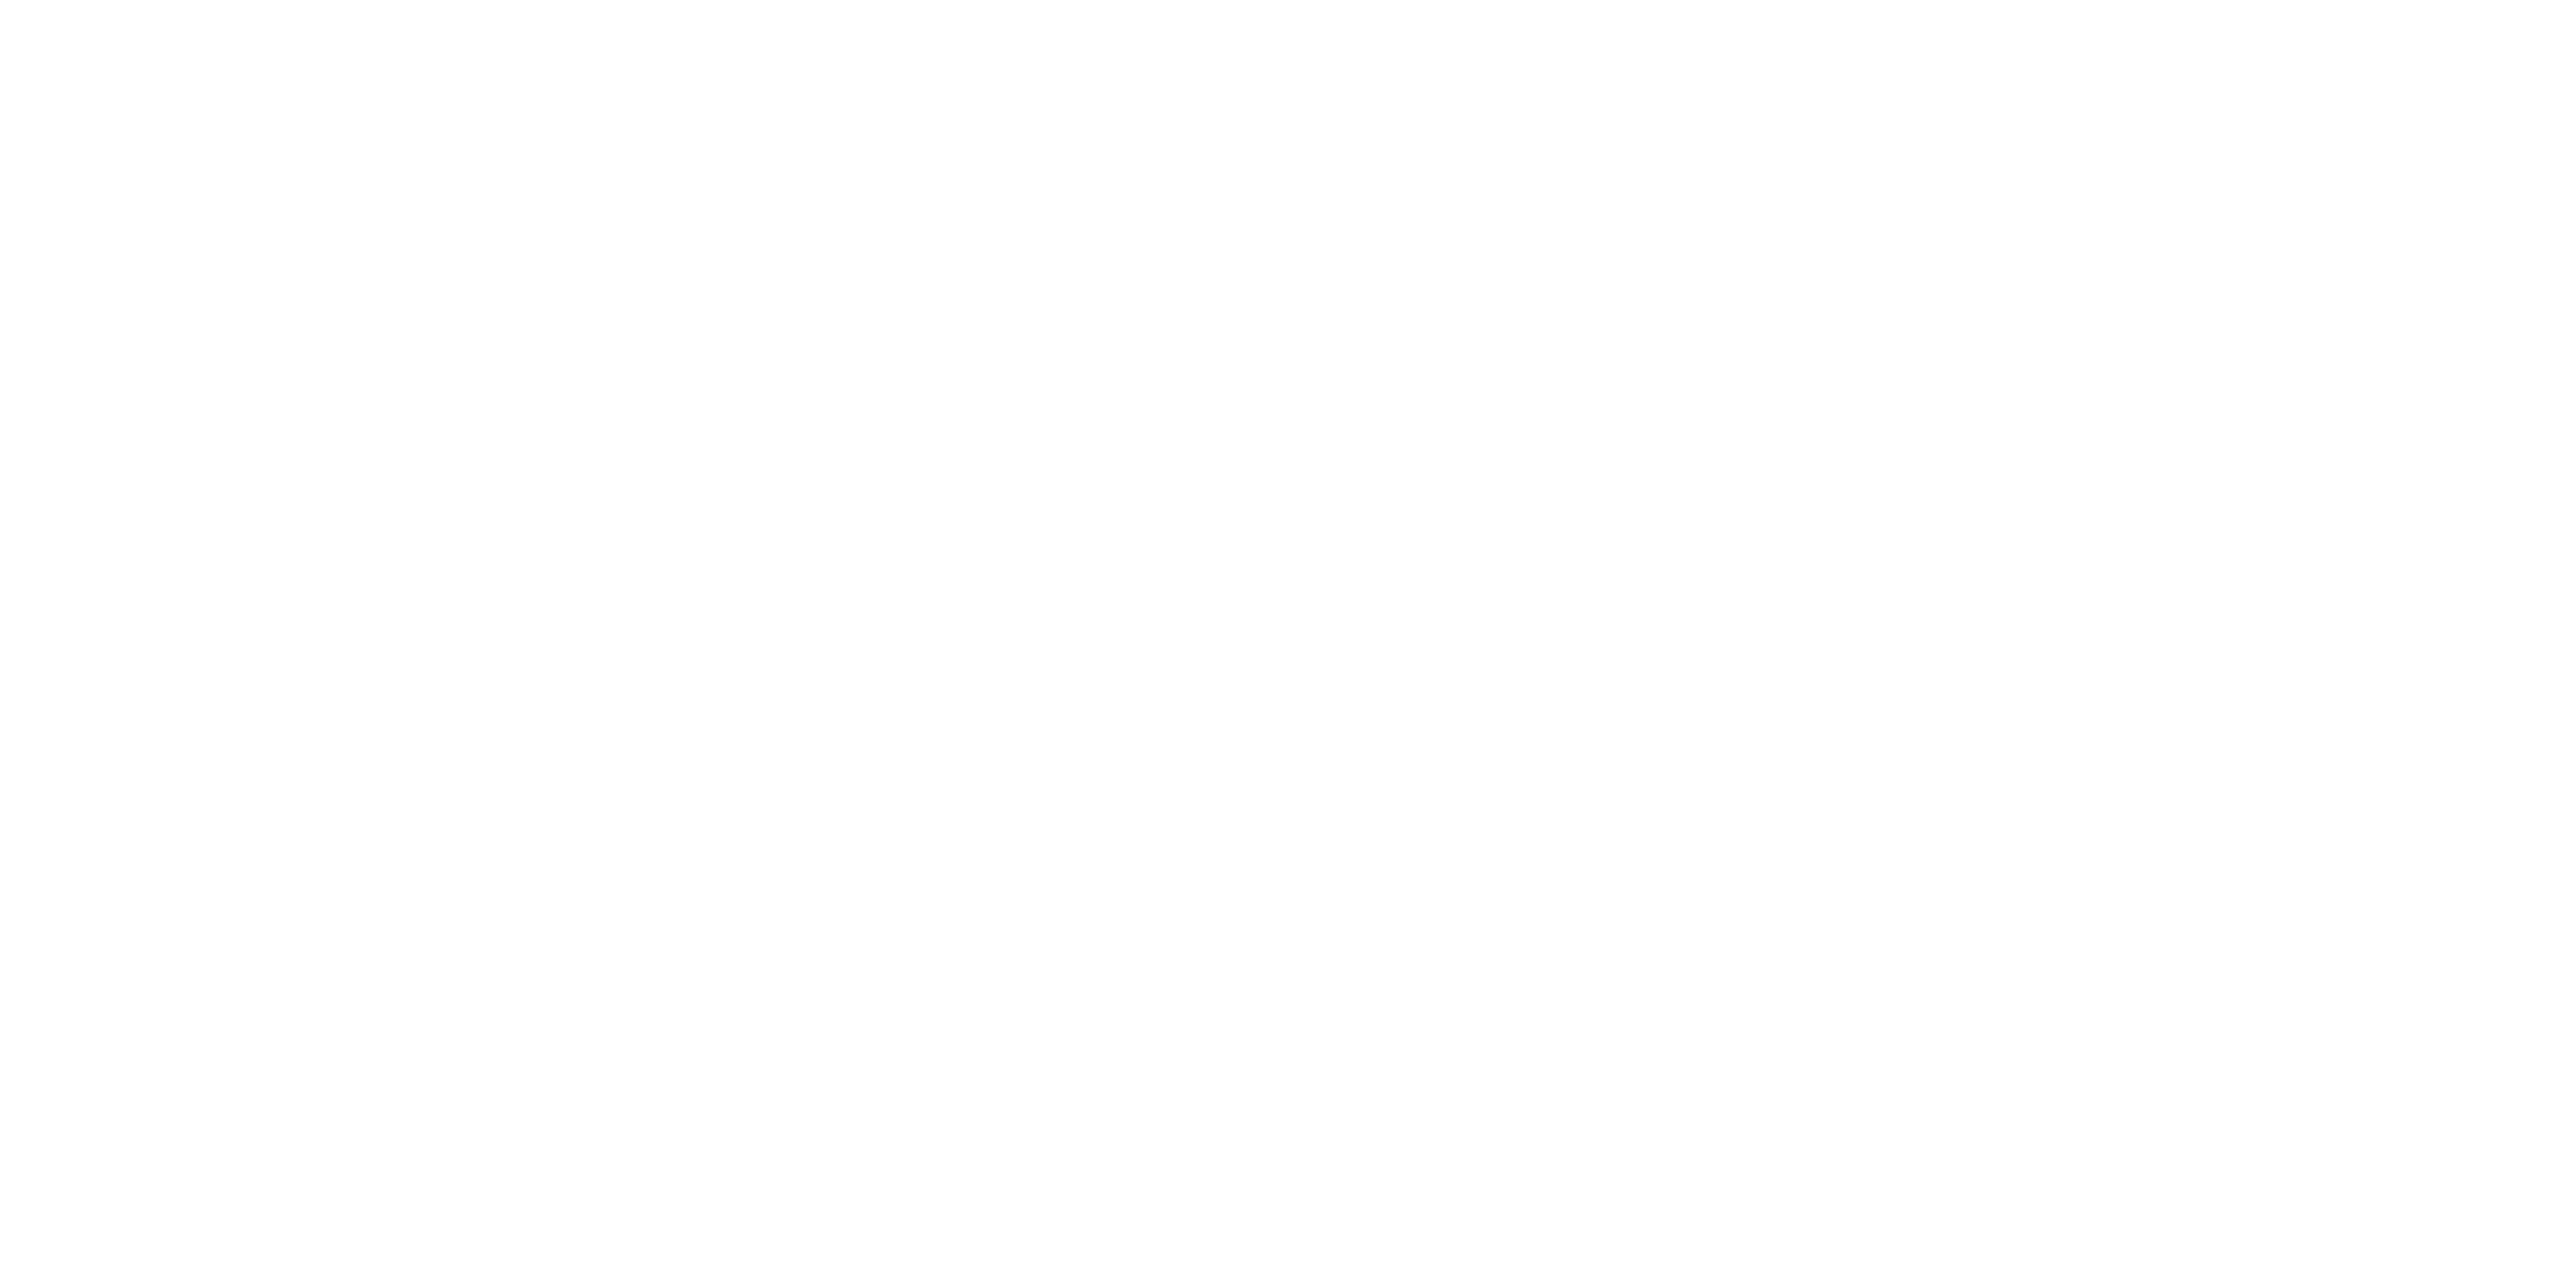 Cap Coste Consulting